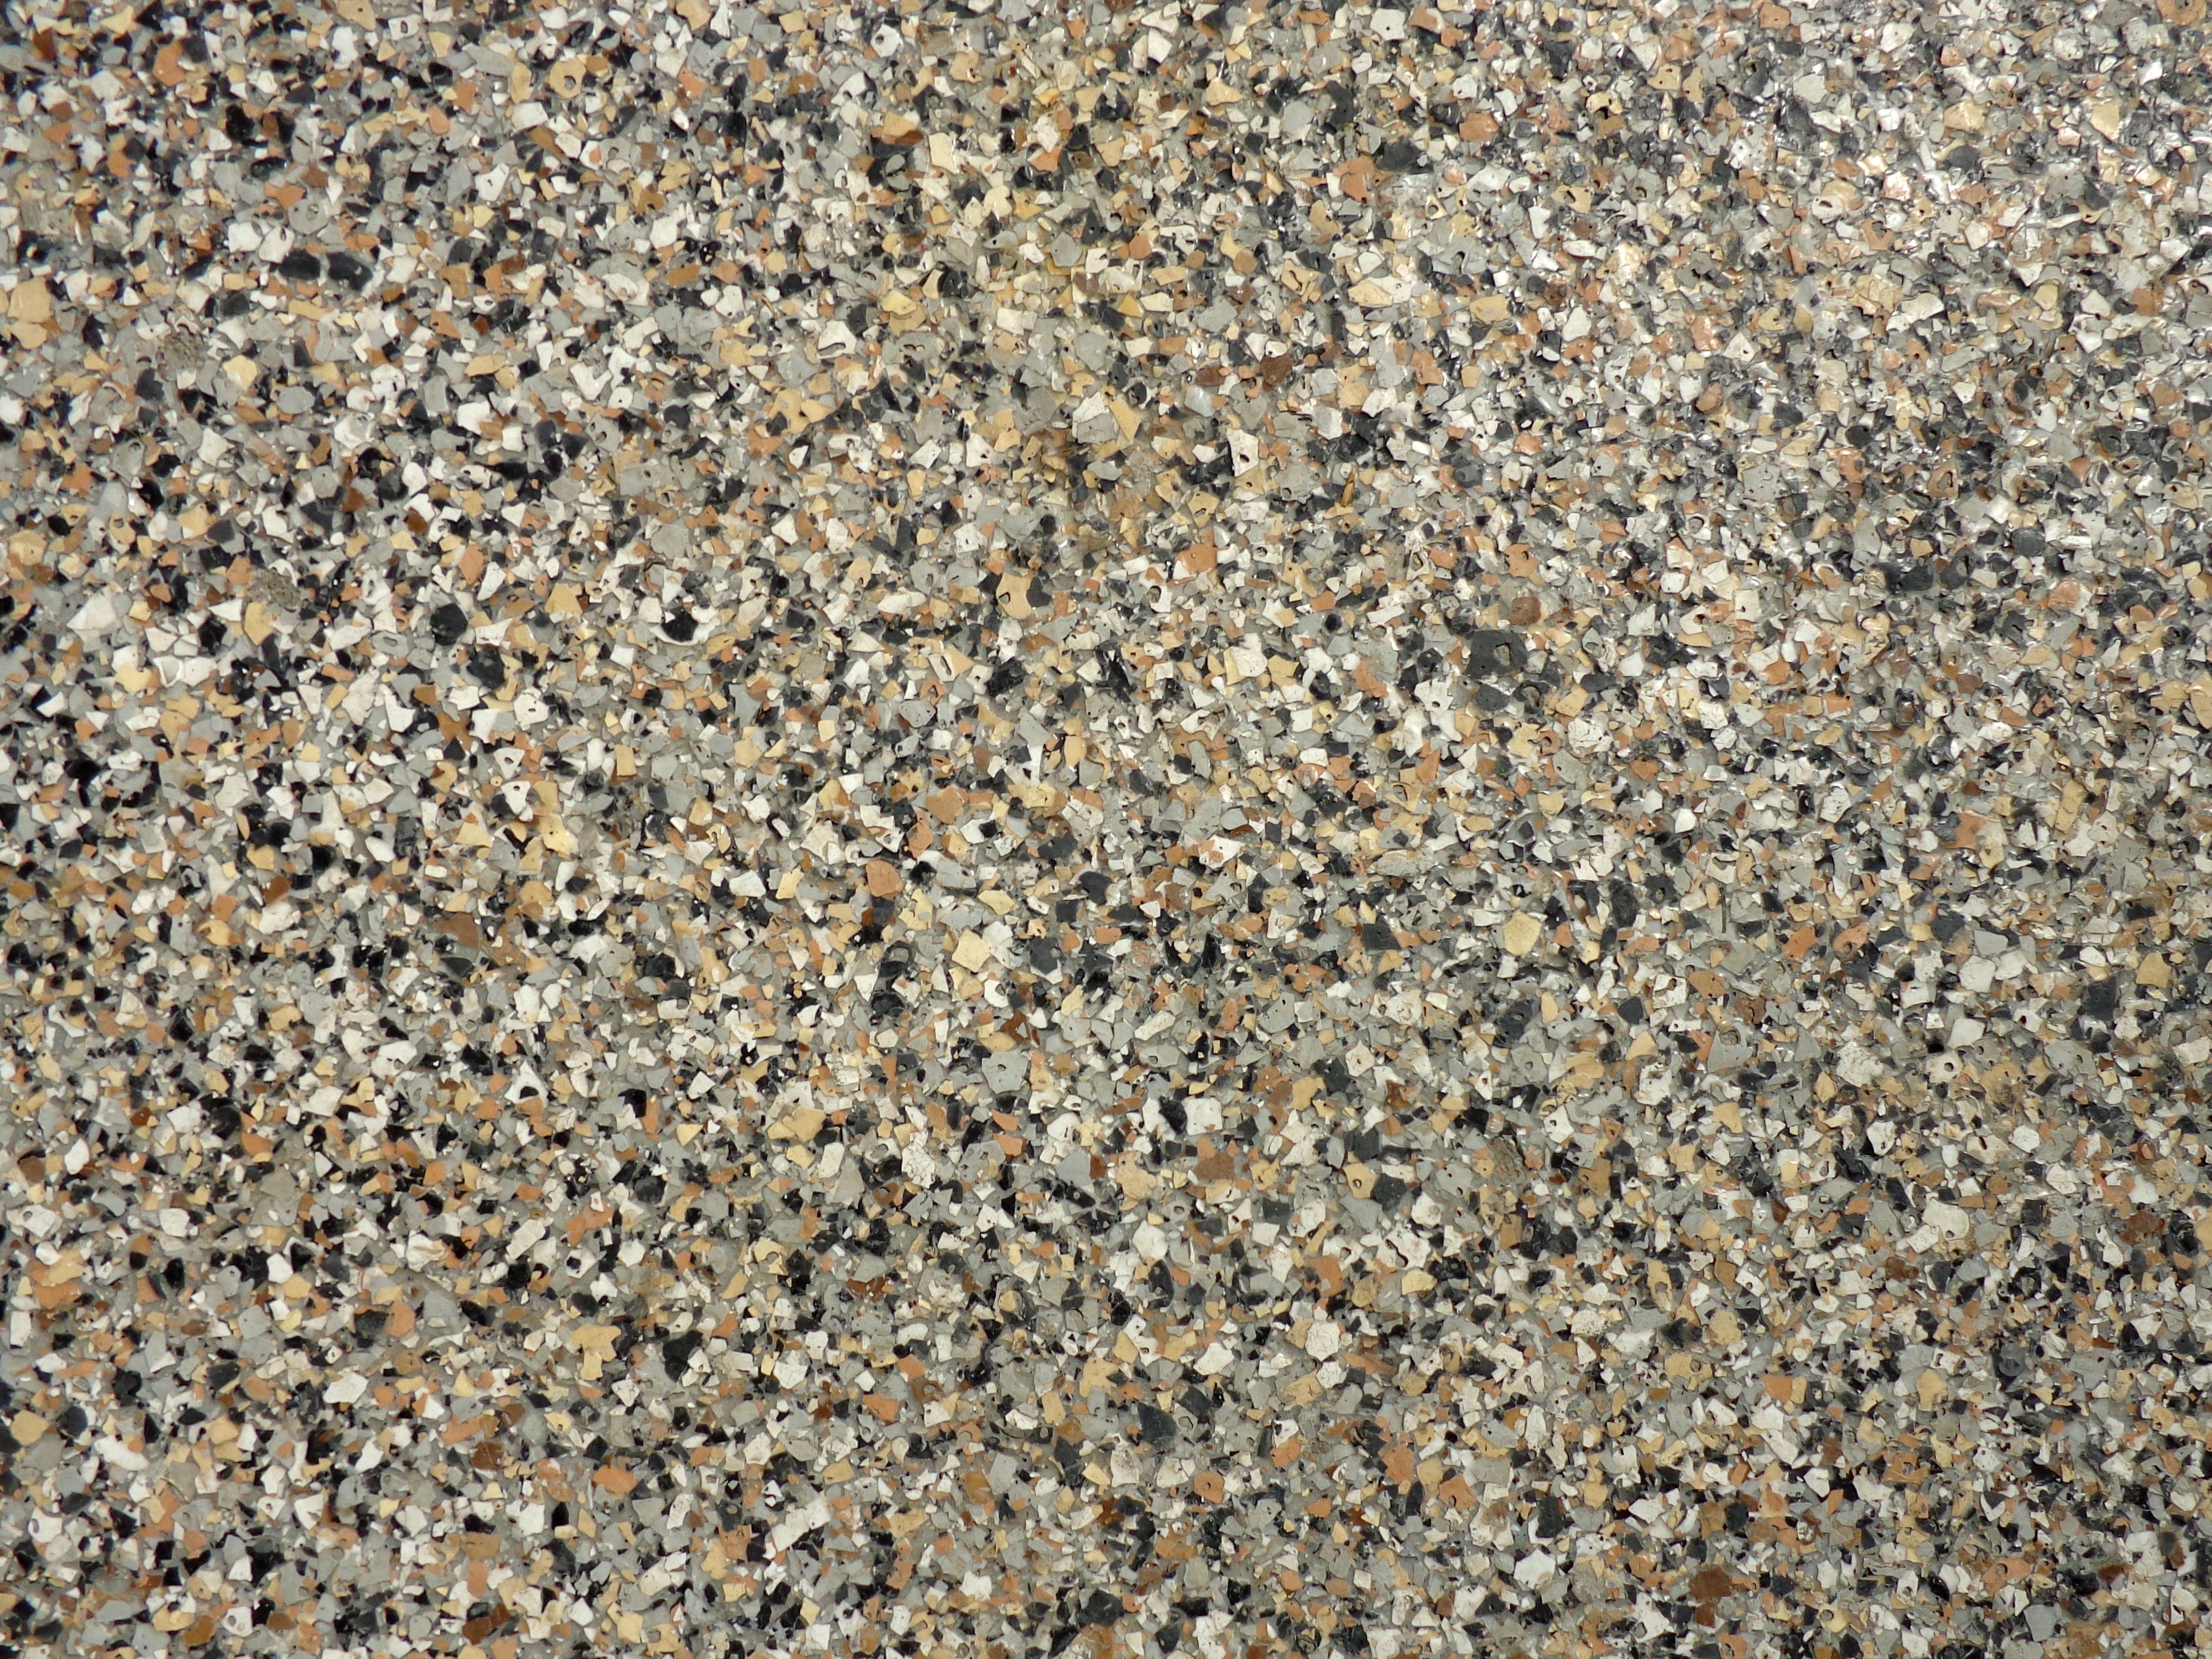 Granite Style Linoleum Floor Texture Picture | Free ...
